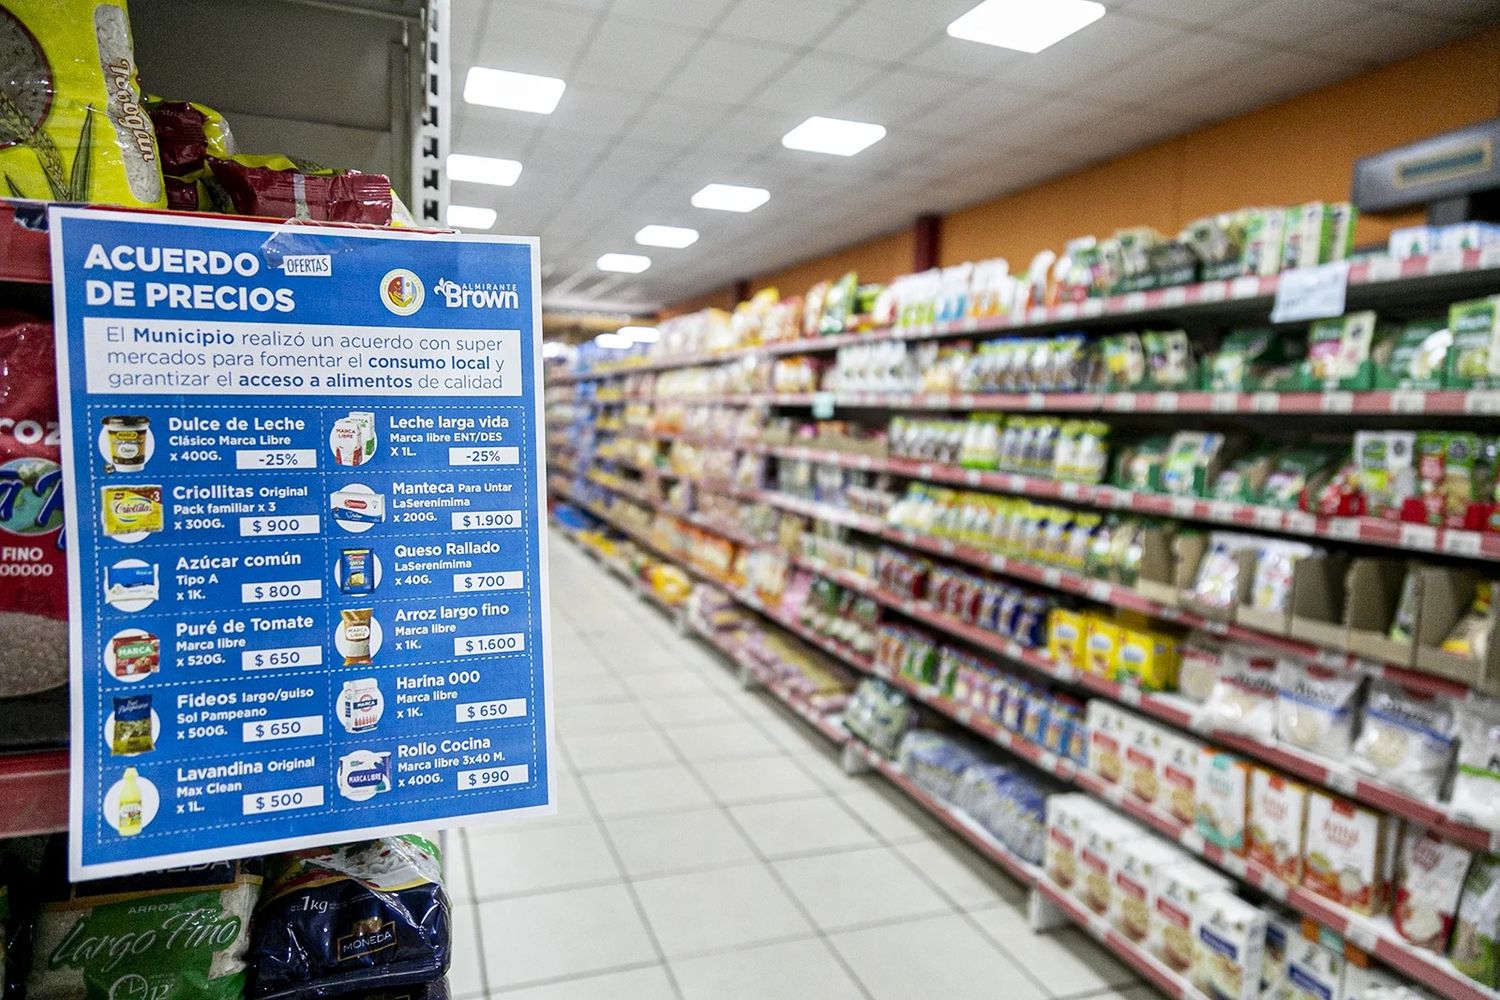 Acuerdo de precios con supermercados chinos